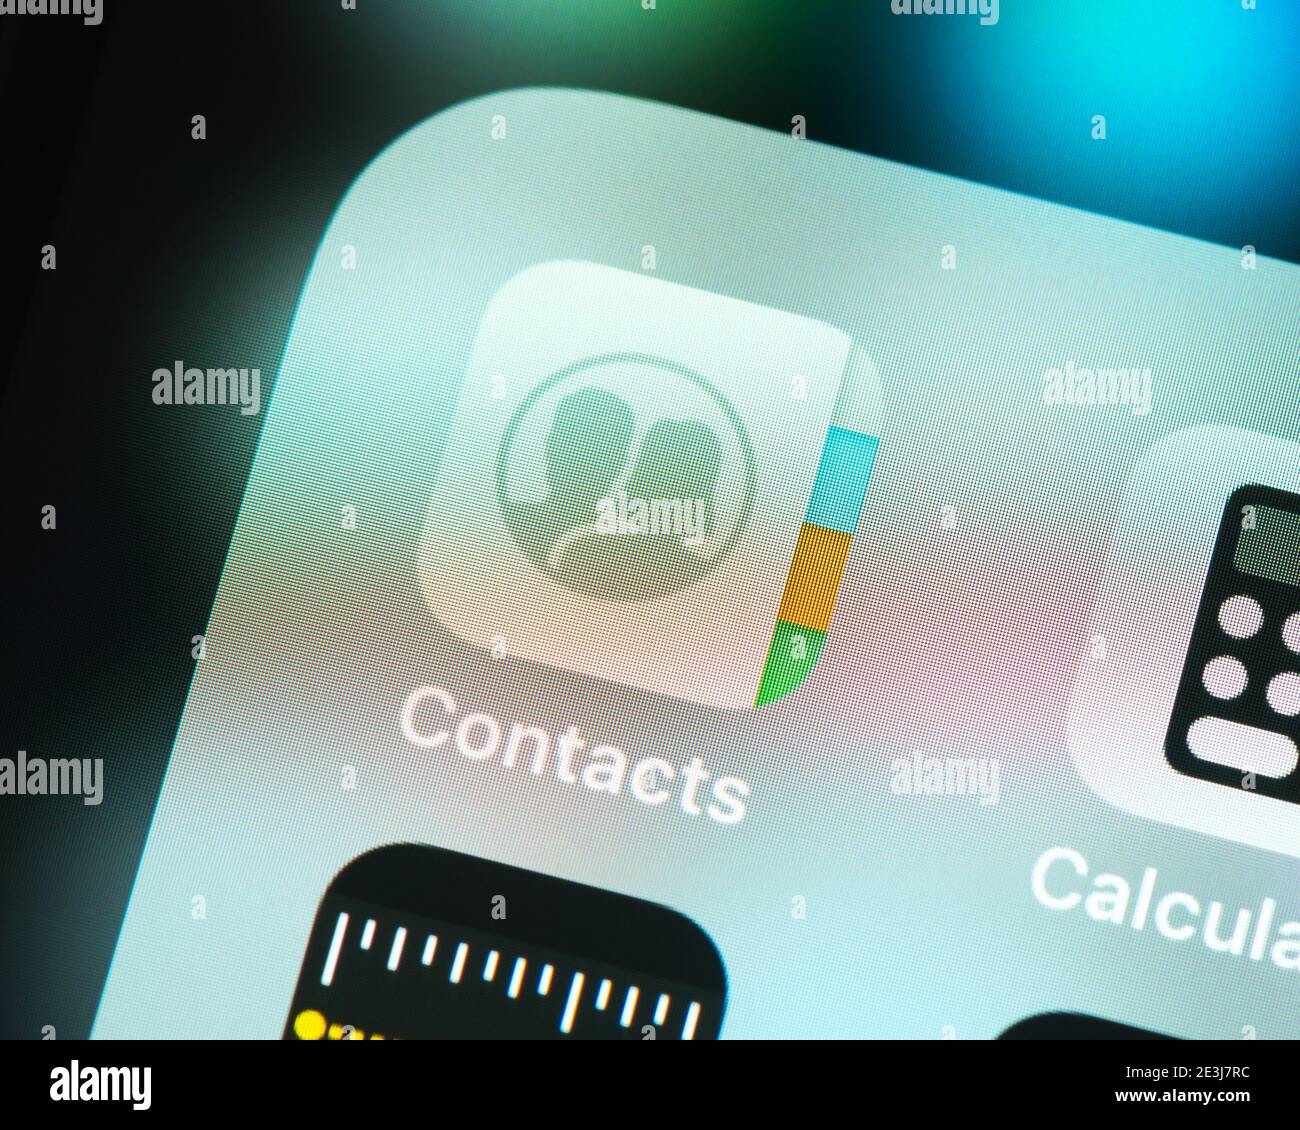 Logo dei contatti apple immagini e fotografie stock ad alta risoluzione -  Alamy